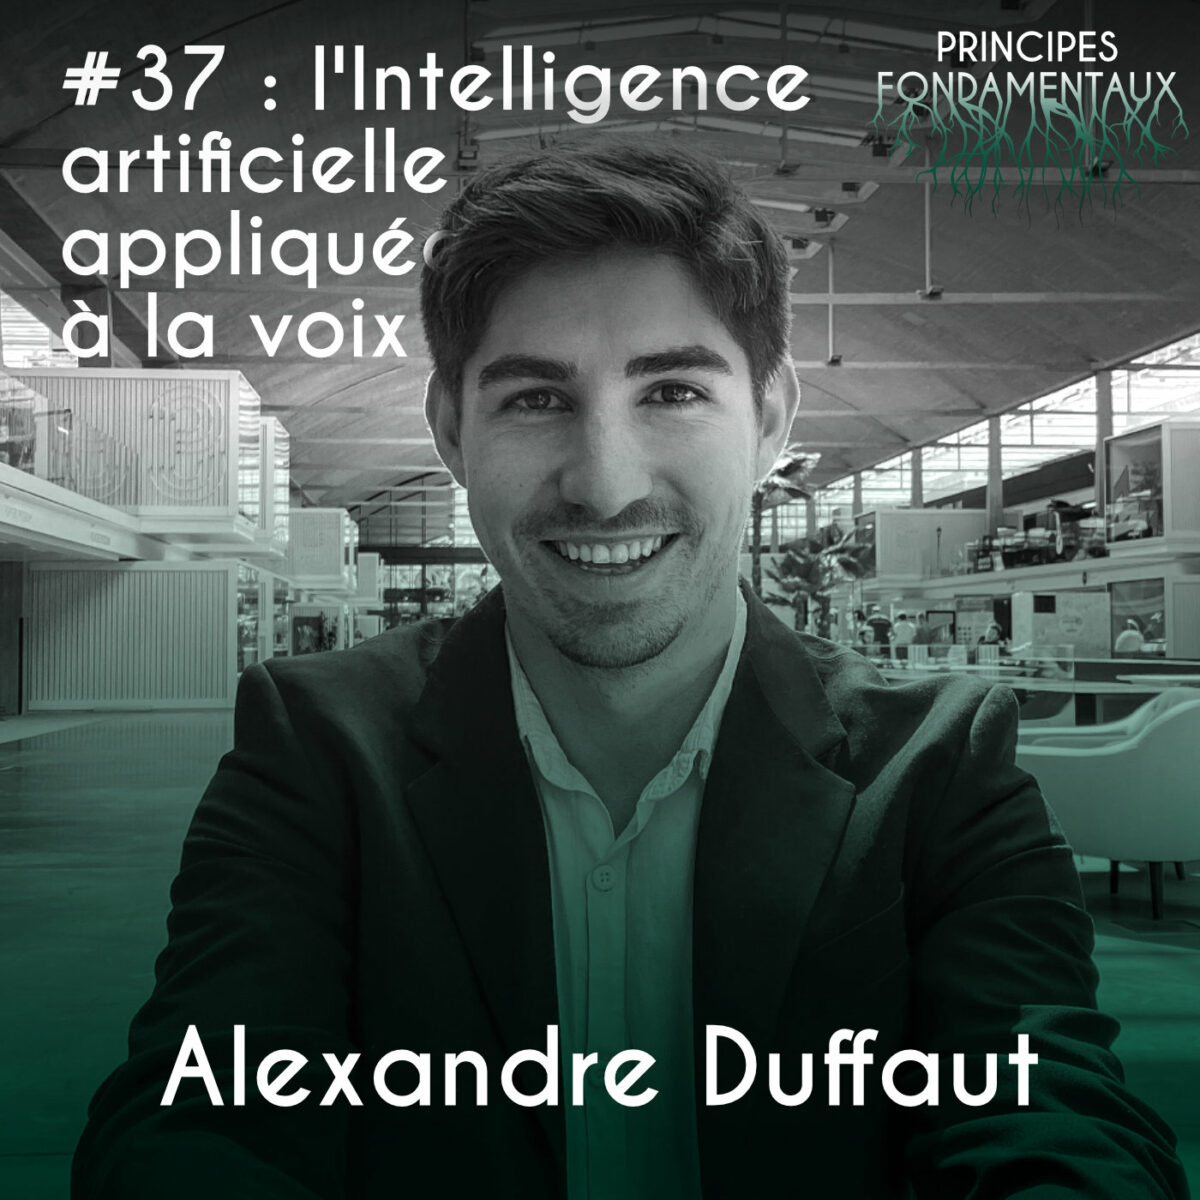 Couverture Podcast #37 : Alexandre Duffaut - l'Intelligence artificielle appliquée à la voix